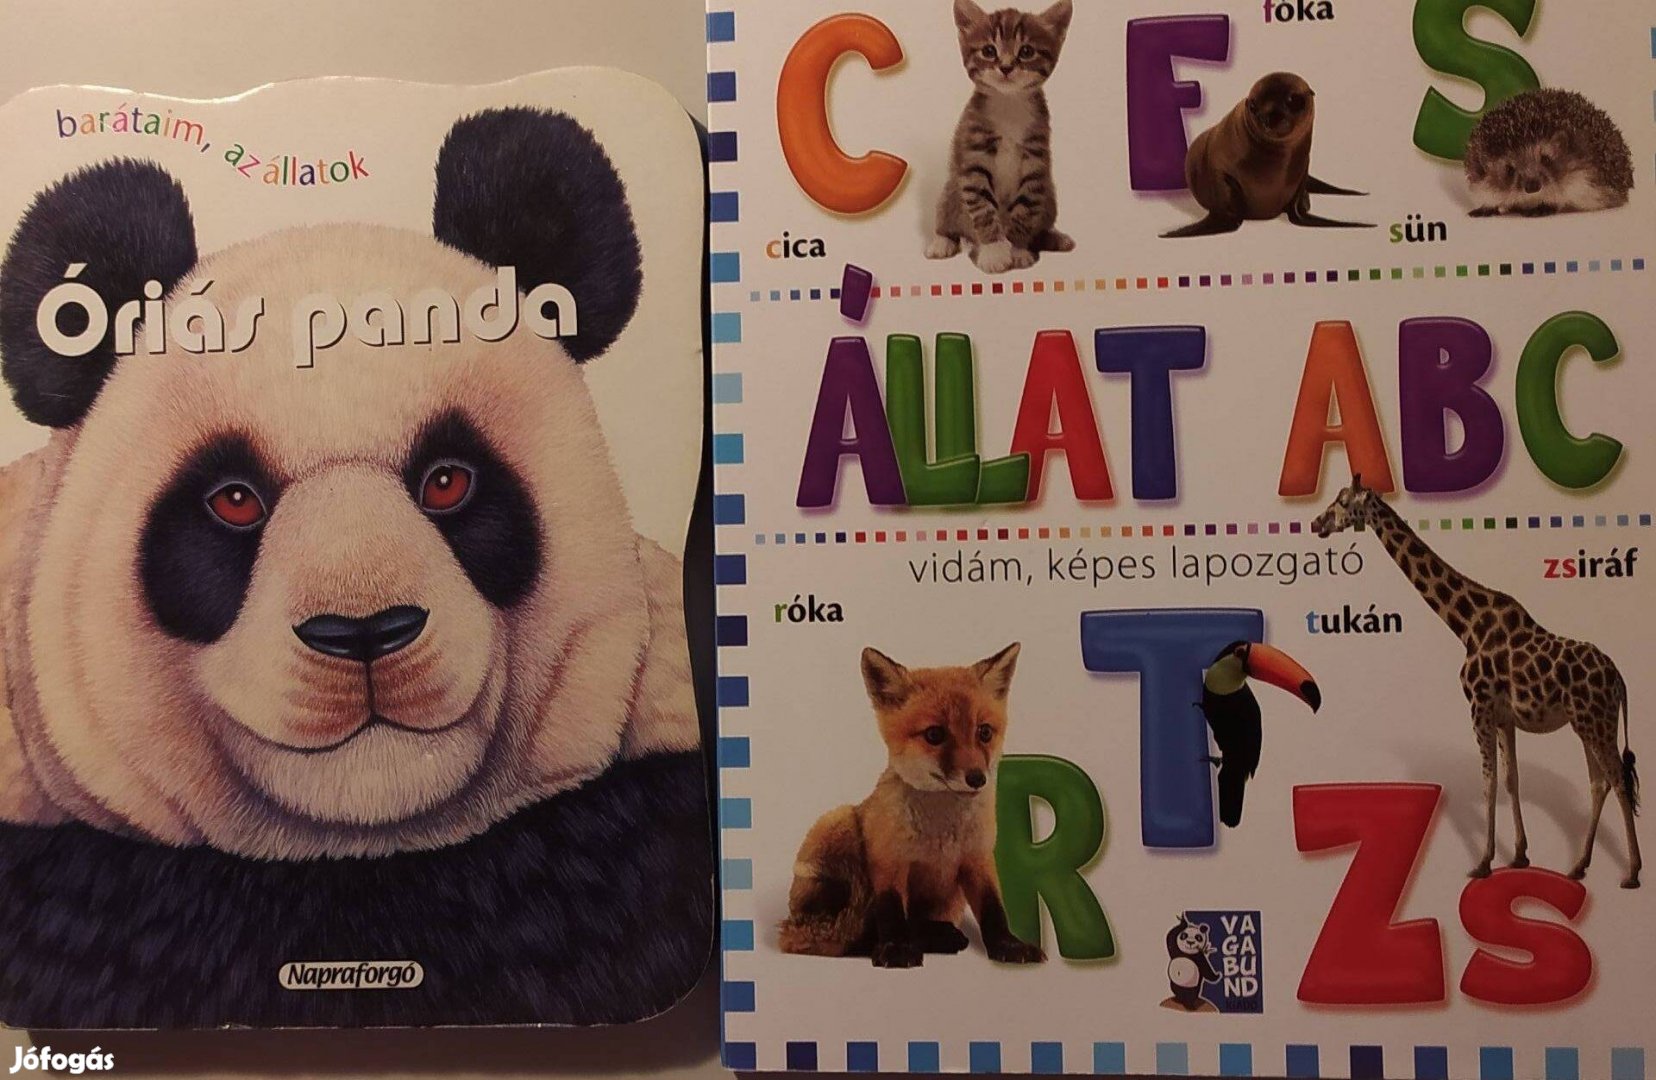 Barátaim, az állatok Óriás Panda + Állat ABC vidám, képes lapozgató